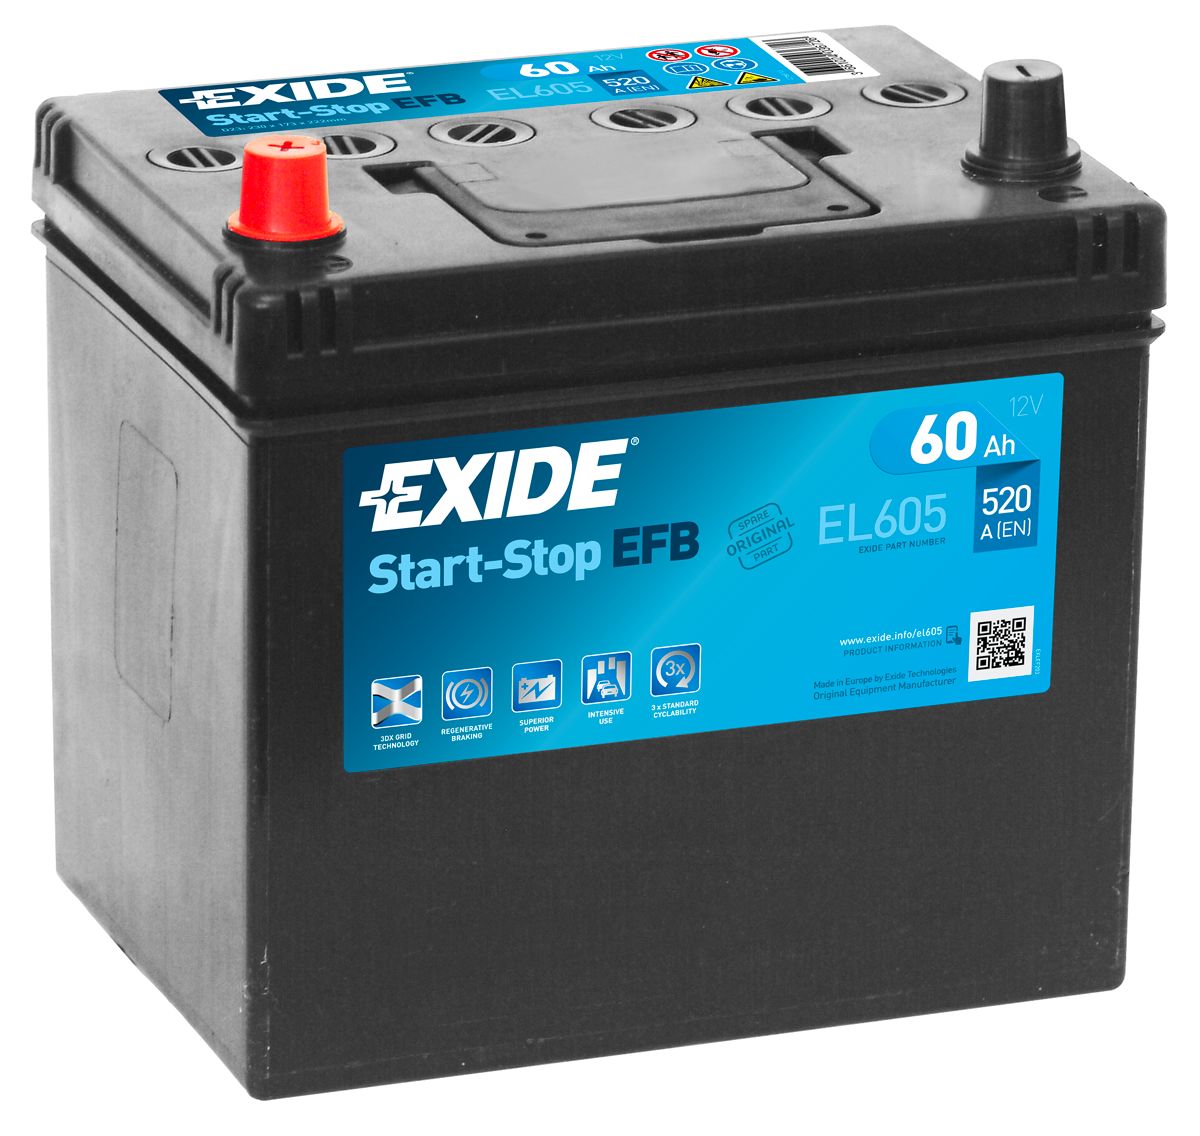 Exide Start-Stop EFB EL604